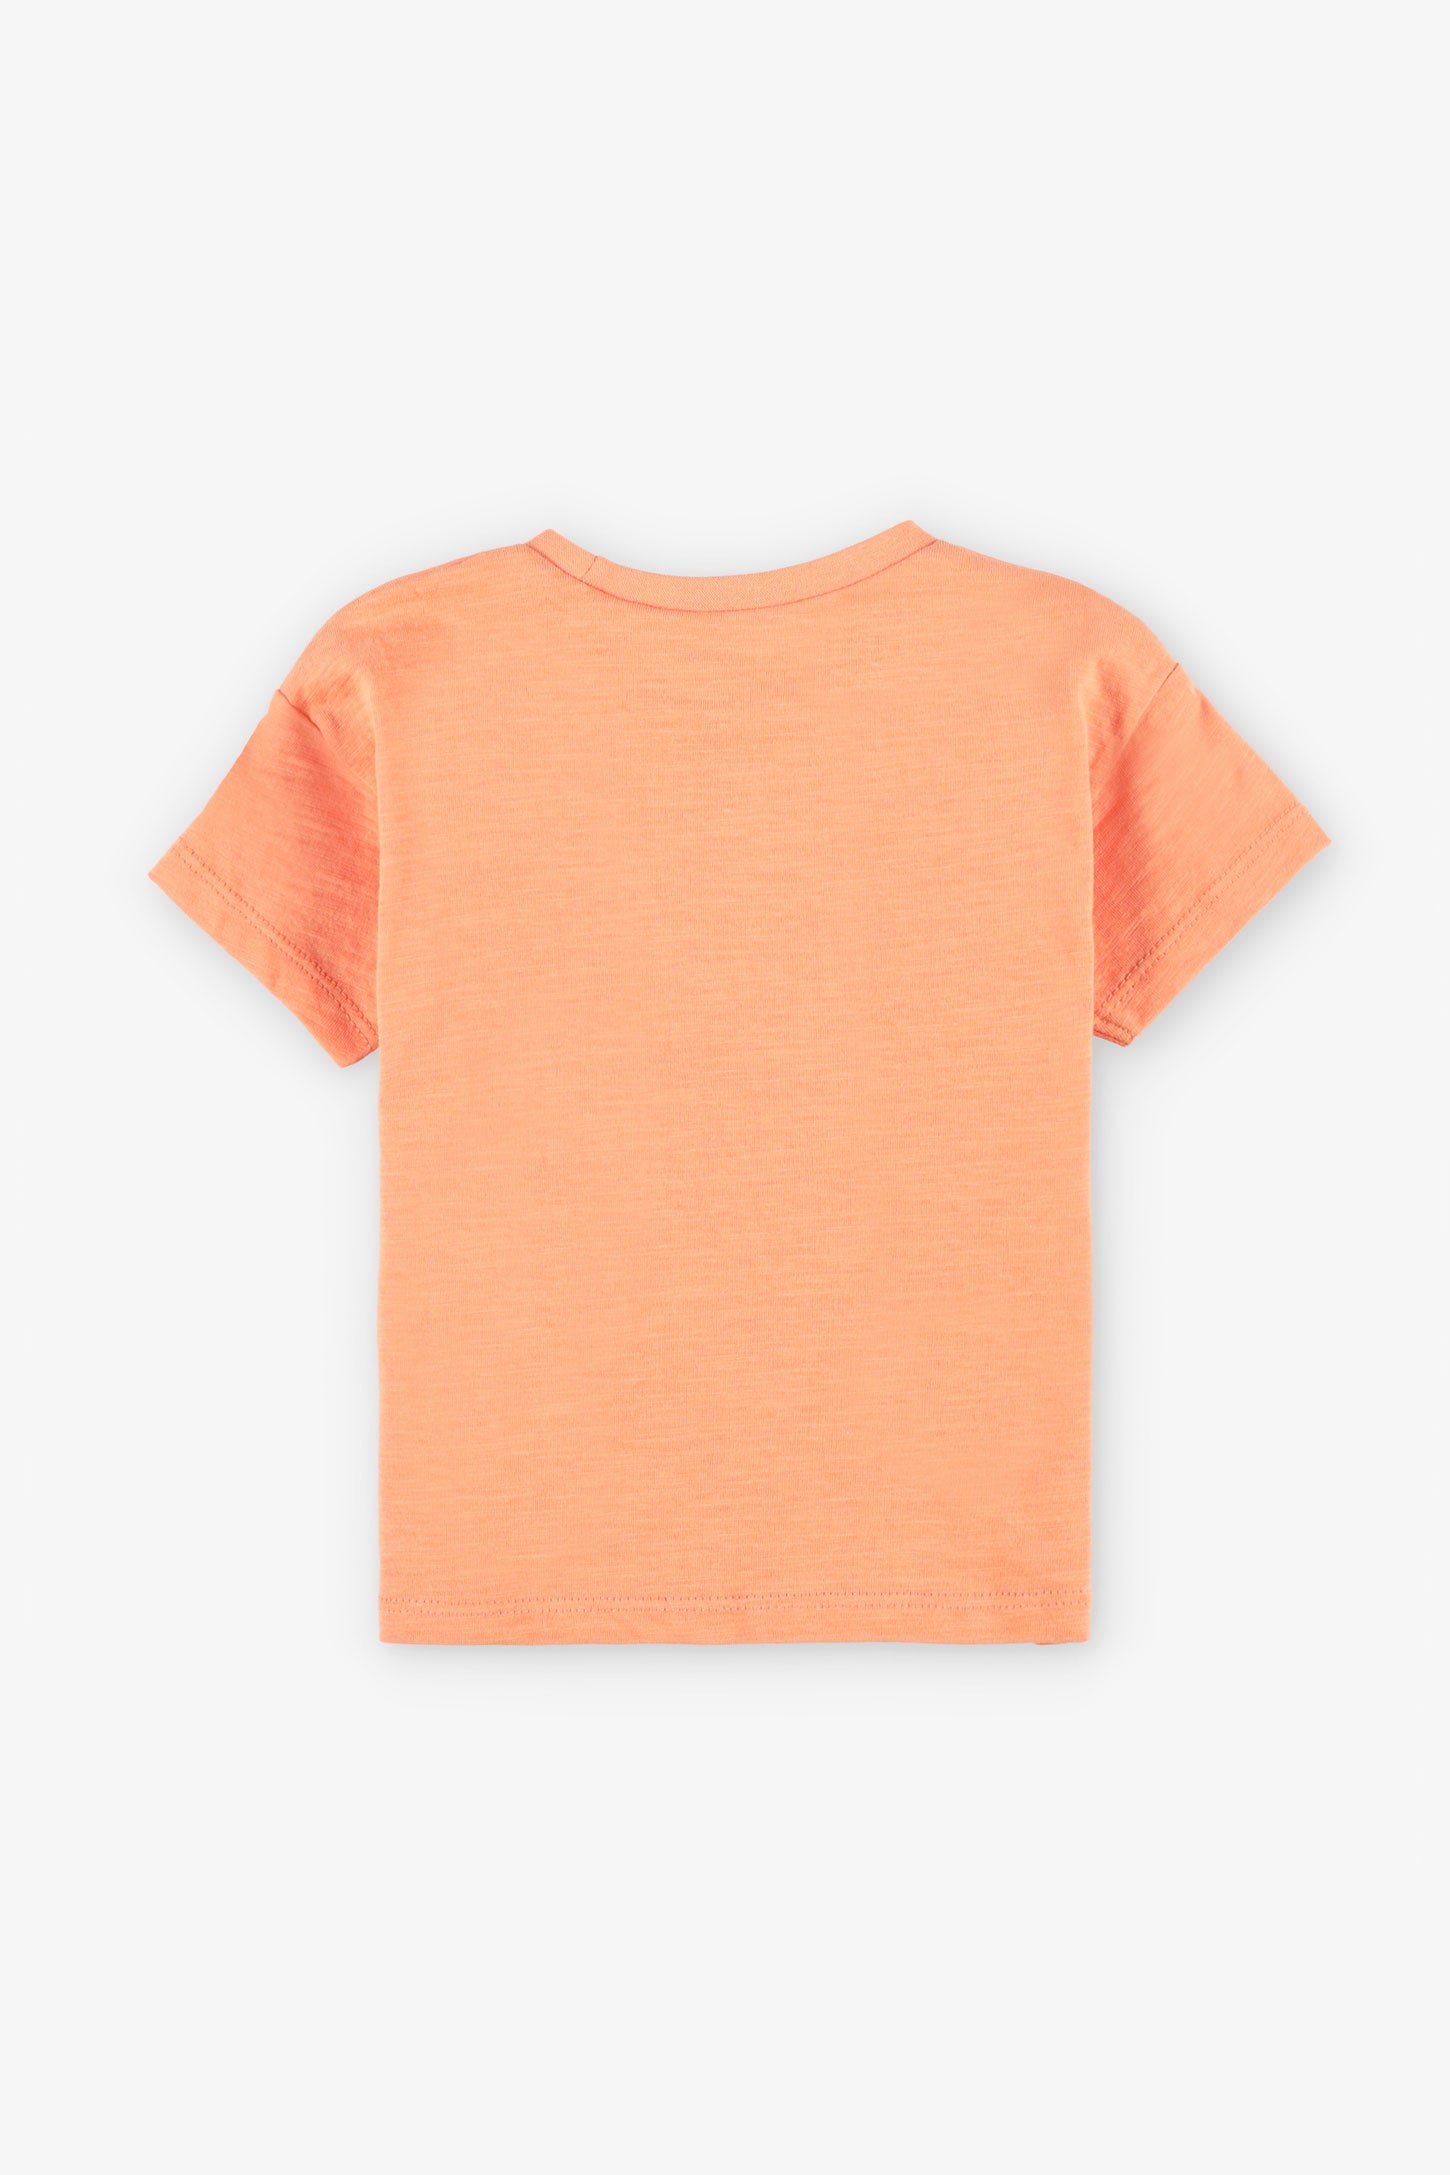 T-shirt coupe ample en coton, 2T-3T, 2/15$ - Bébé fille && ORANGE